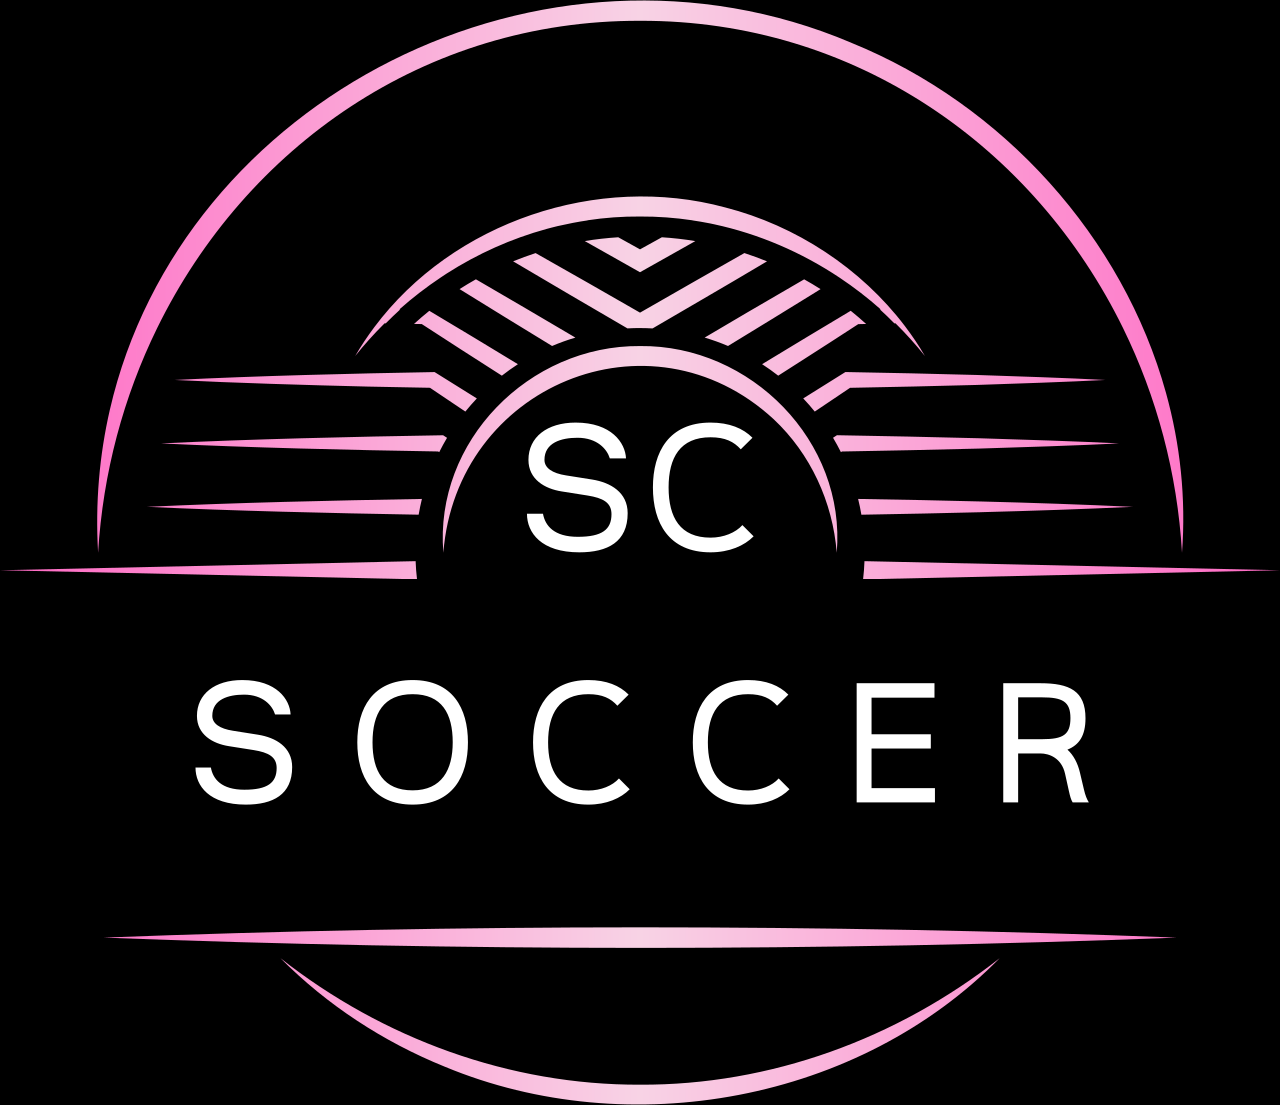 Soccer's logo